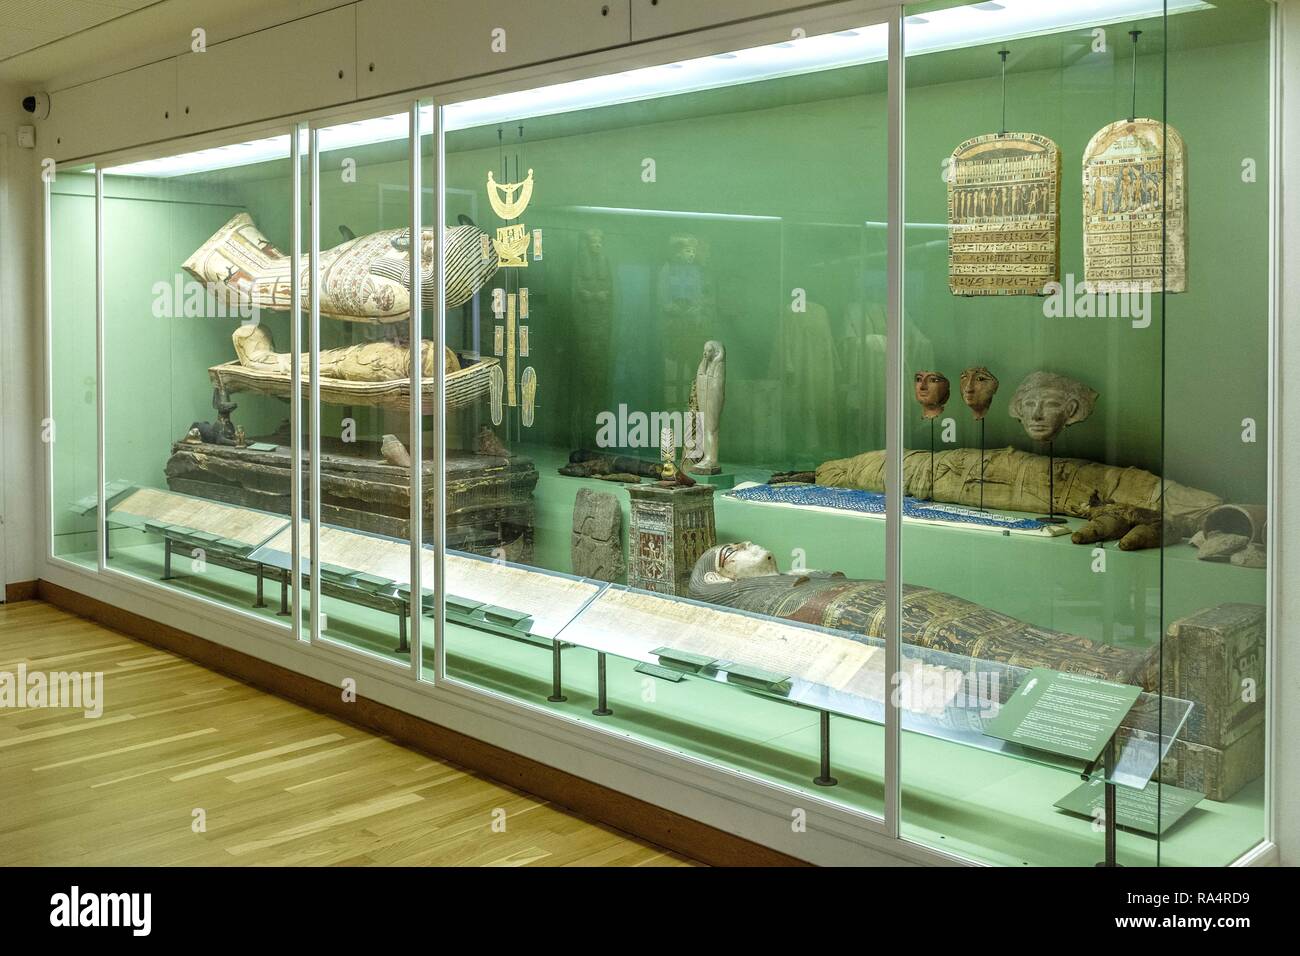 Dania - regione Zelanda - Kopenhaga - muzeum sztuki starozytnej Gliptoteka - sala wystawowa poswiecona eksponatom ze starozytnego Egiptu - mumie ho sarkofagi egipskie Danimarca - Zelanda regione - Copenhag Foto Stock